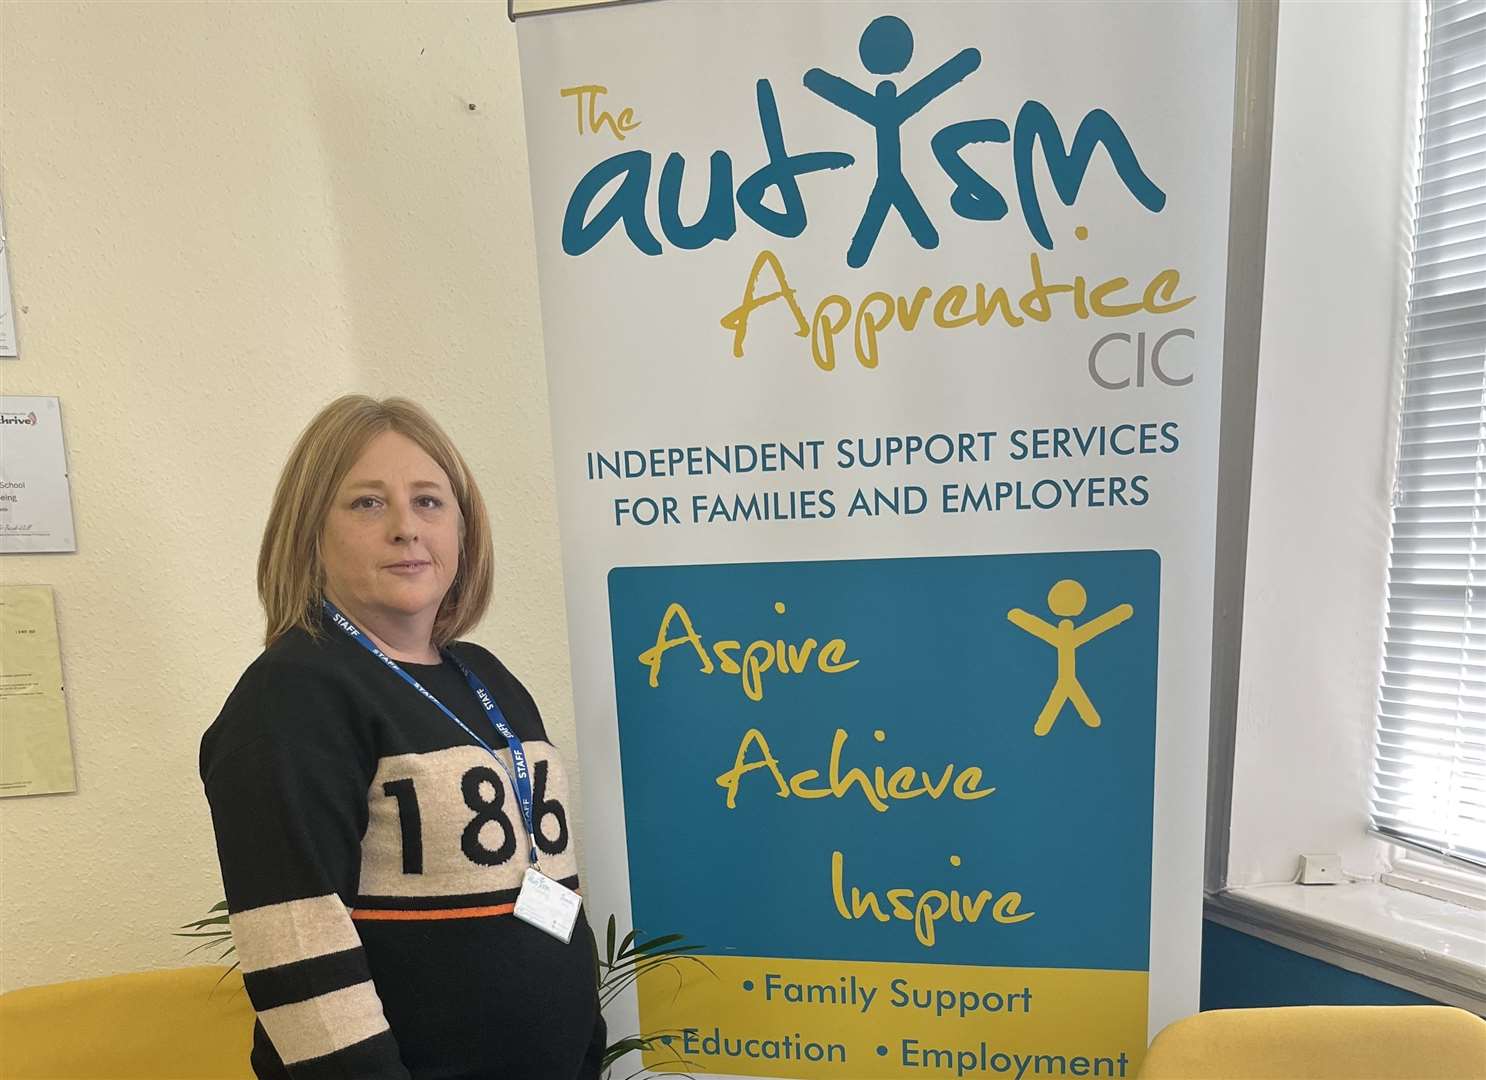 Sarah Aldridge, operations director at The Autism Apprentice